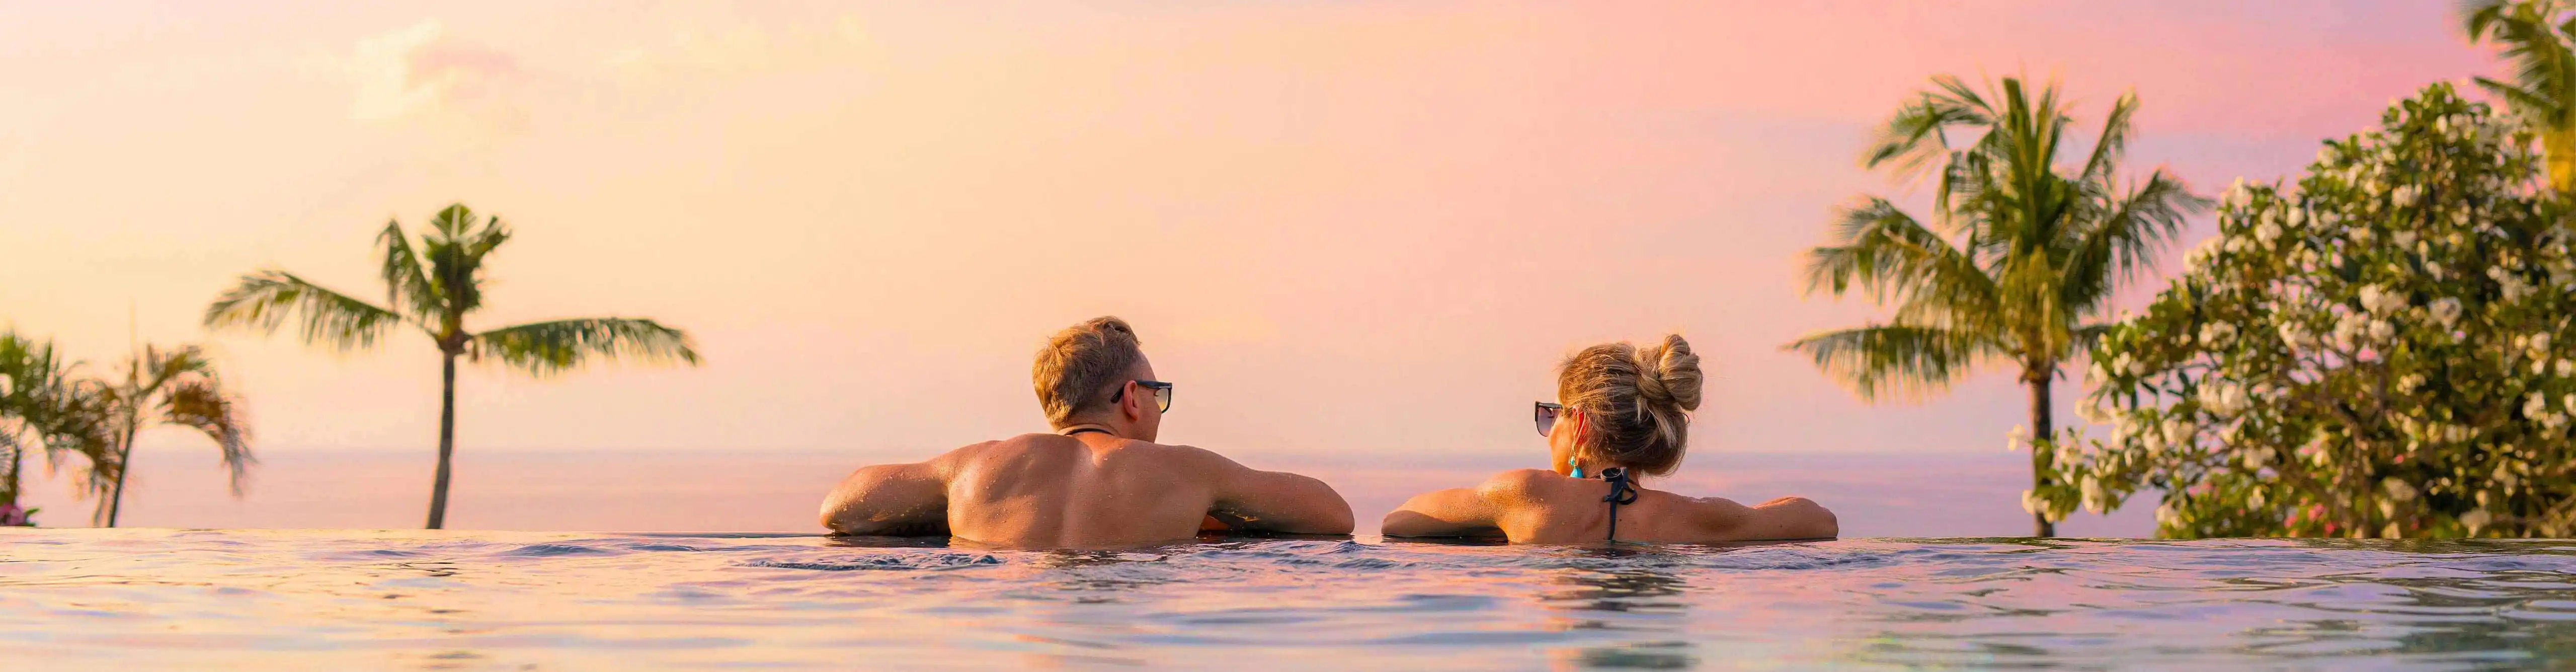 Headerimage: Couple in pool looking towards sea